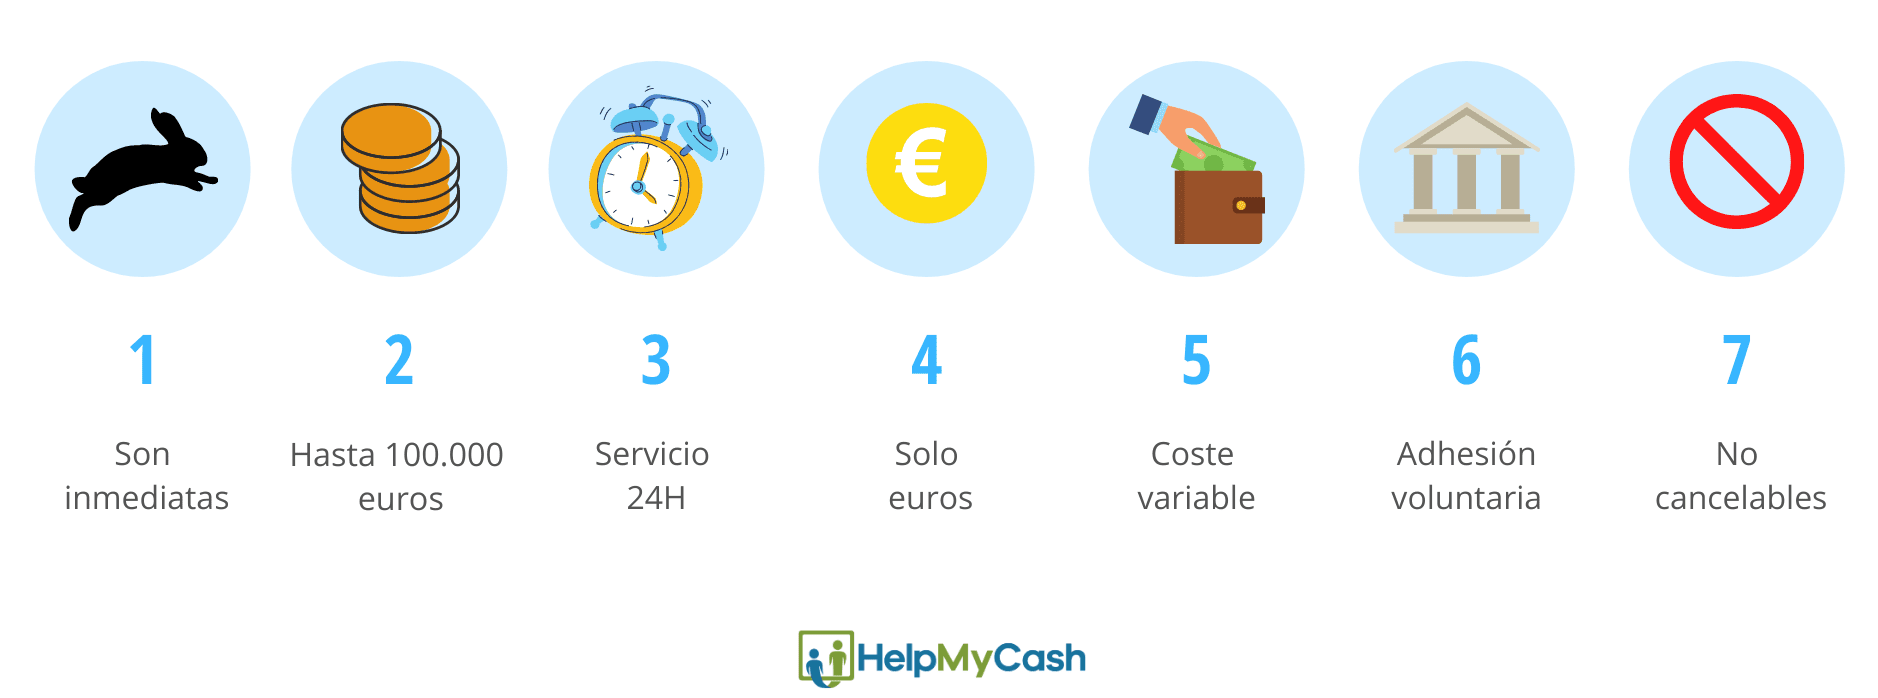 Transferencias inmediatas: 1-son inmediatas. 2- envío máximo de 100.000 euros. 3- el servicio es 24H. 4- solo funciona con euros. 5-el coste de cada transferencia es variable.6- no es obligatorio que un banco lo ofrezca. 7-No se pueden cancelar